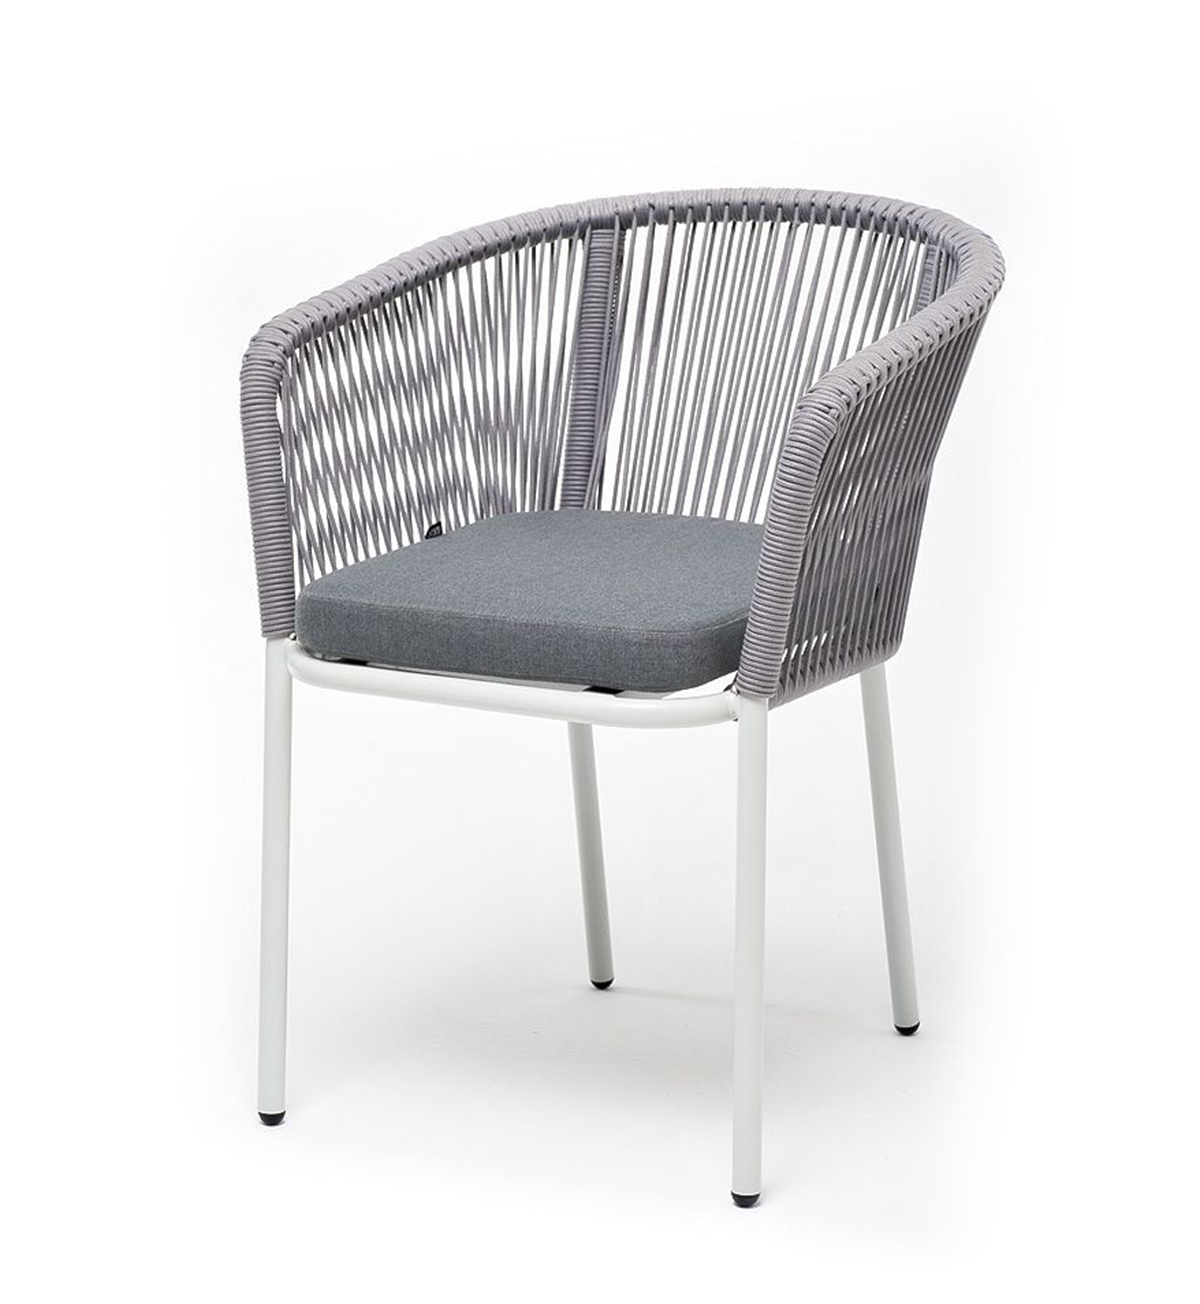 Плетеный стул из роупа Марсель бело-серый плетеный стул из роупа марсель бело серый